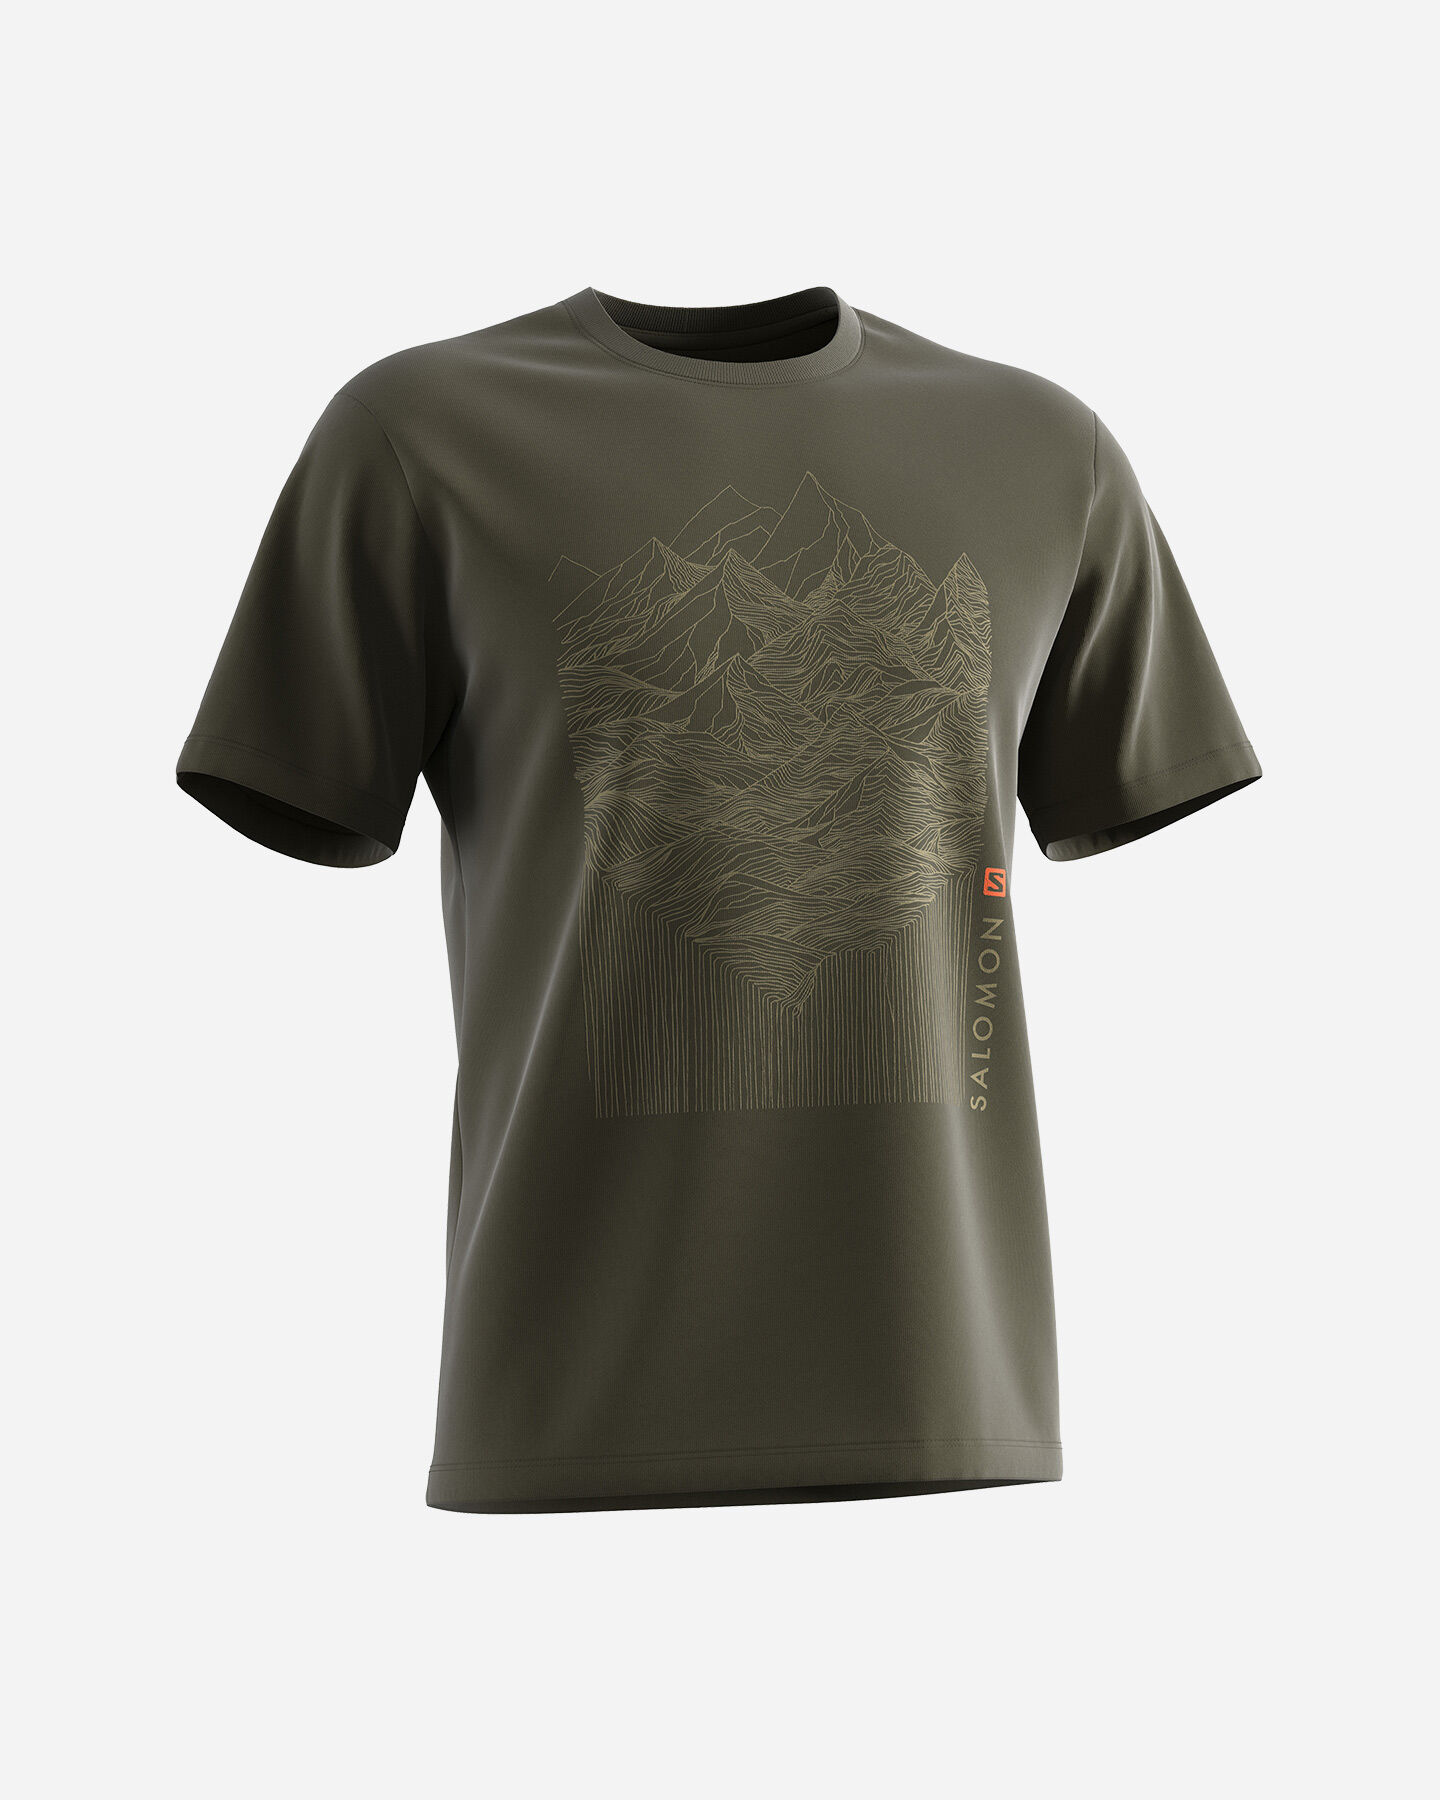  T-Shirt SALOMON OUTLIFE MOUNTAIN M S5407815|UNI|S scatto 2